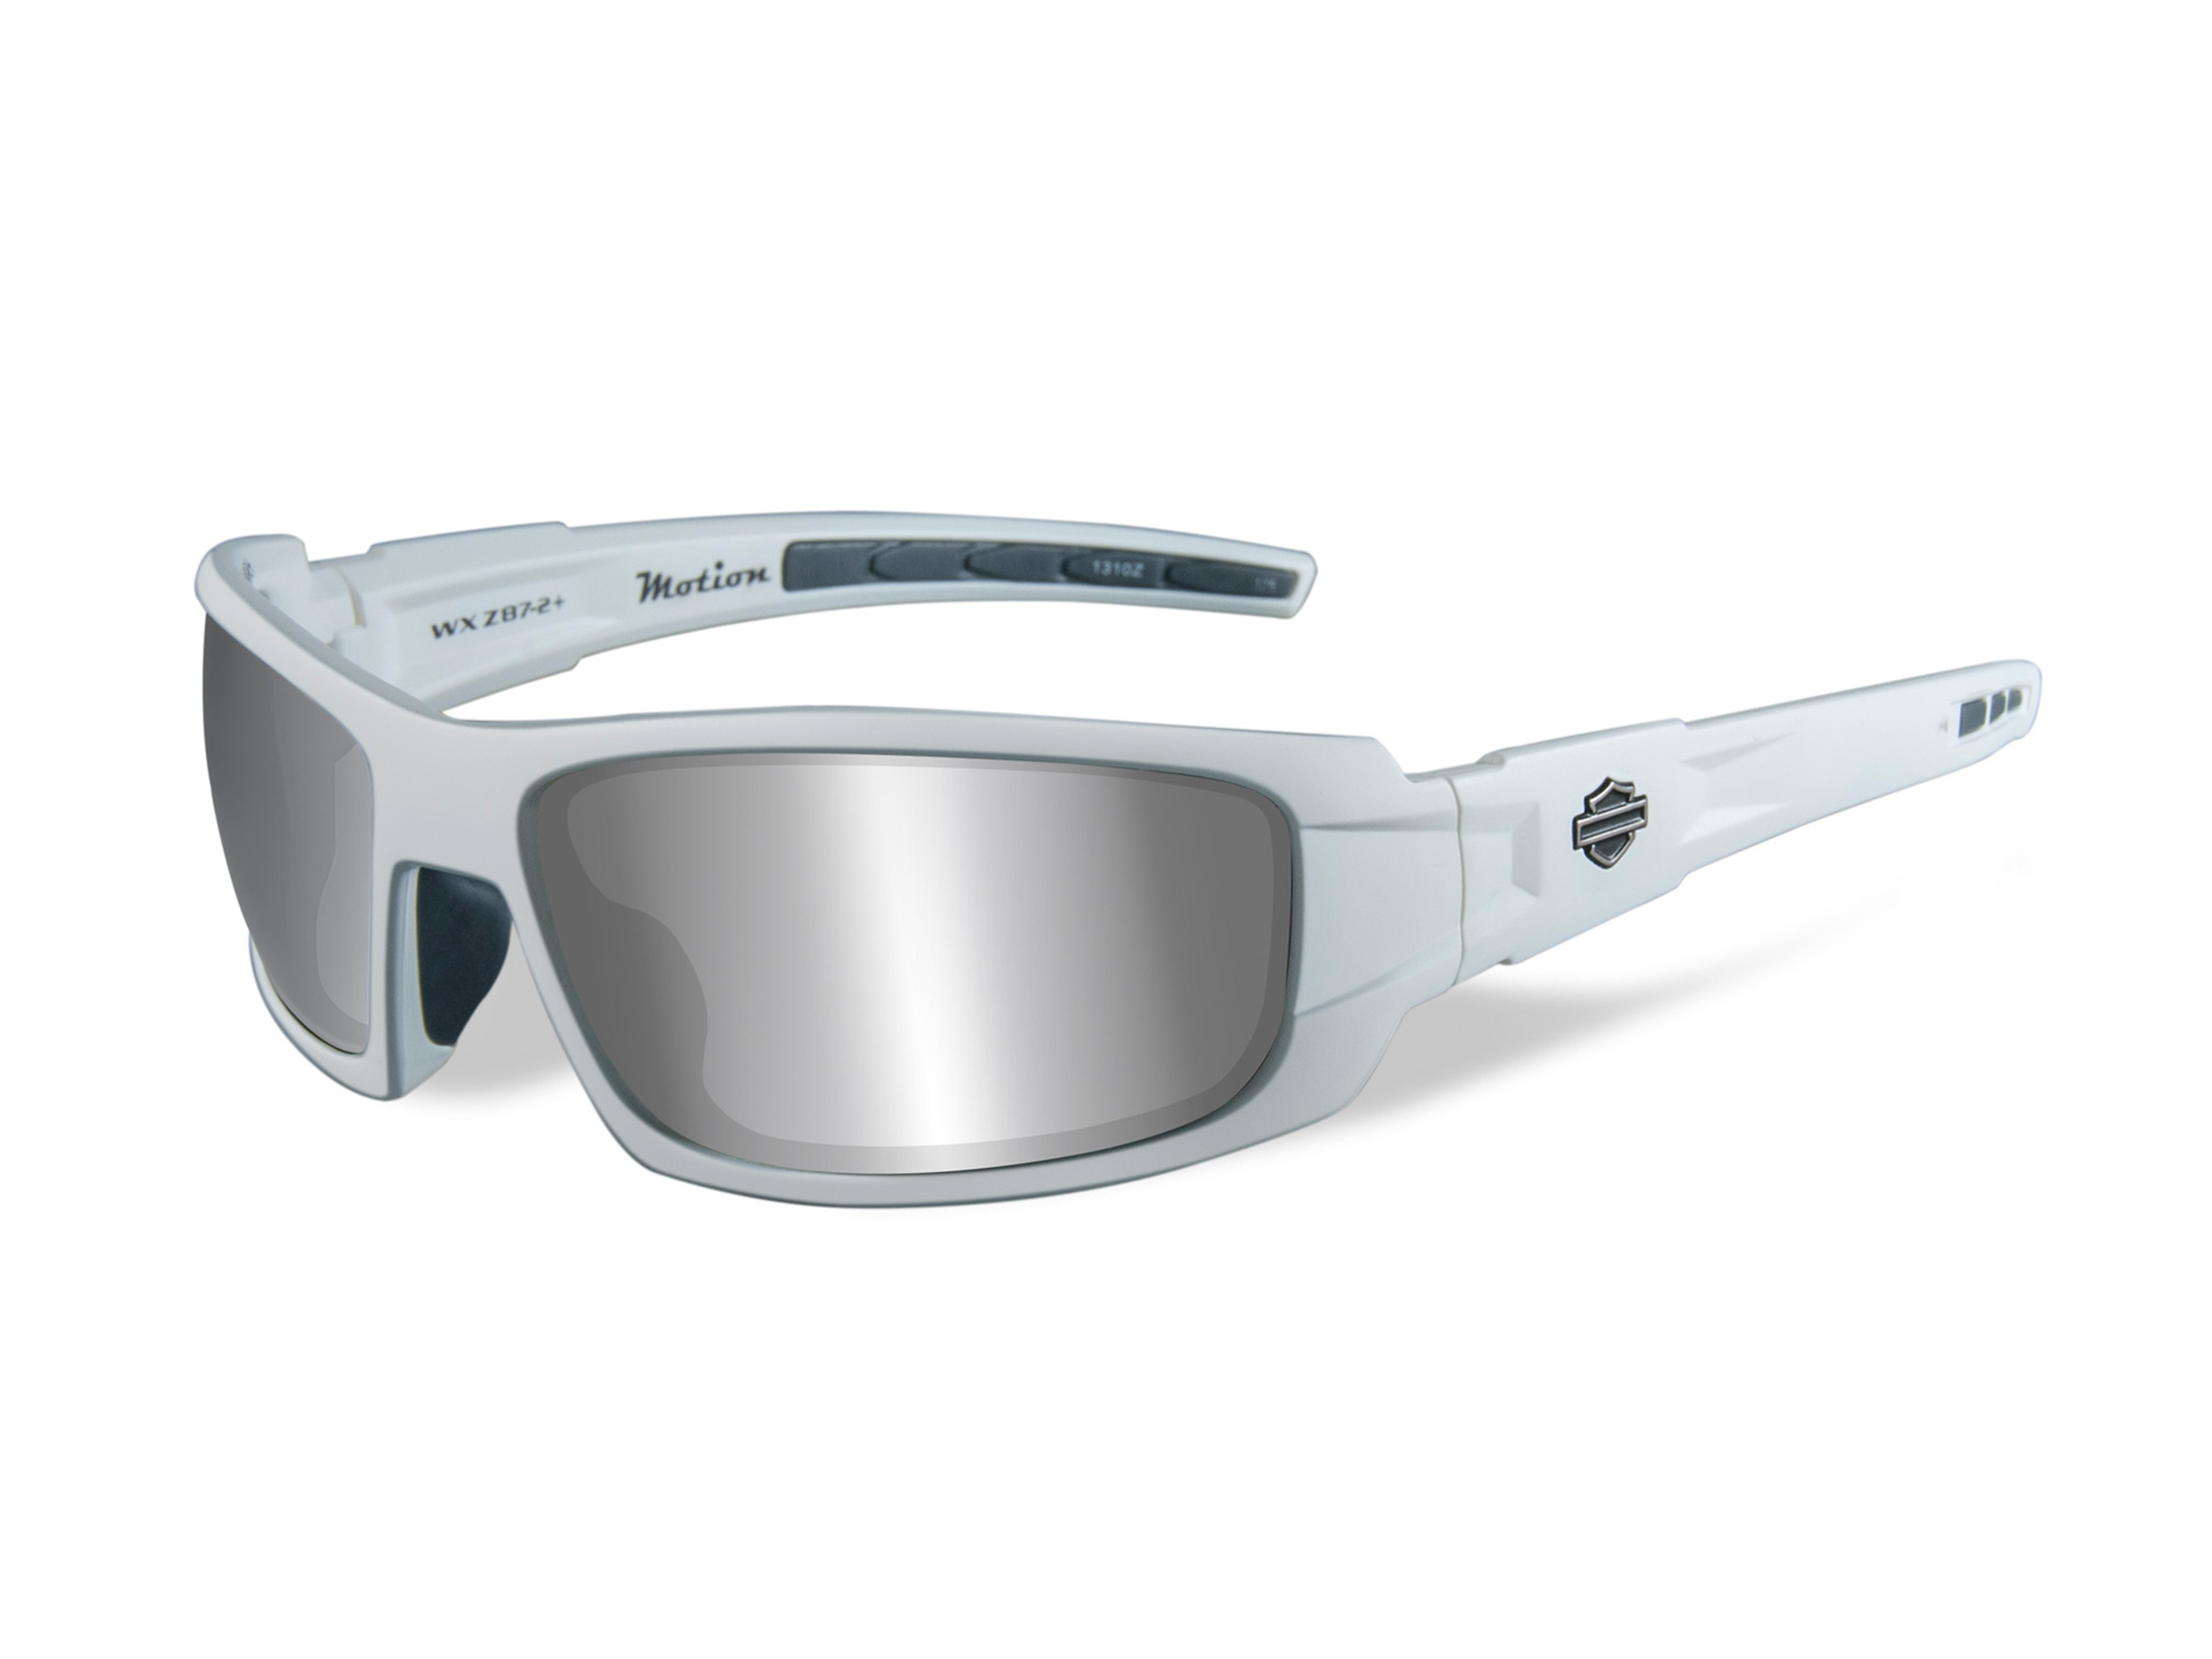 2 Stück Dunlop Brille Clip Weiss Farbe zu Verwendung im Auto Brillenhalter  Unisex kaufen bei